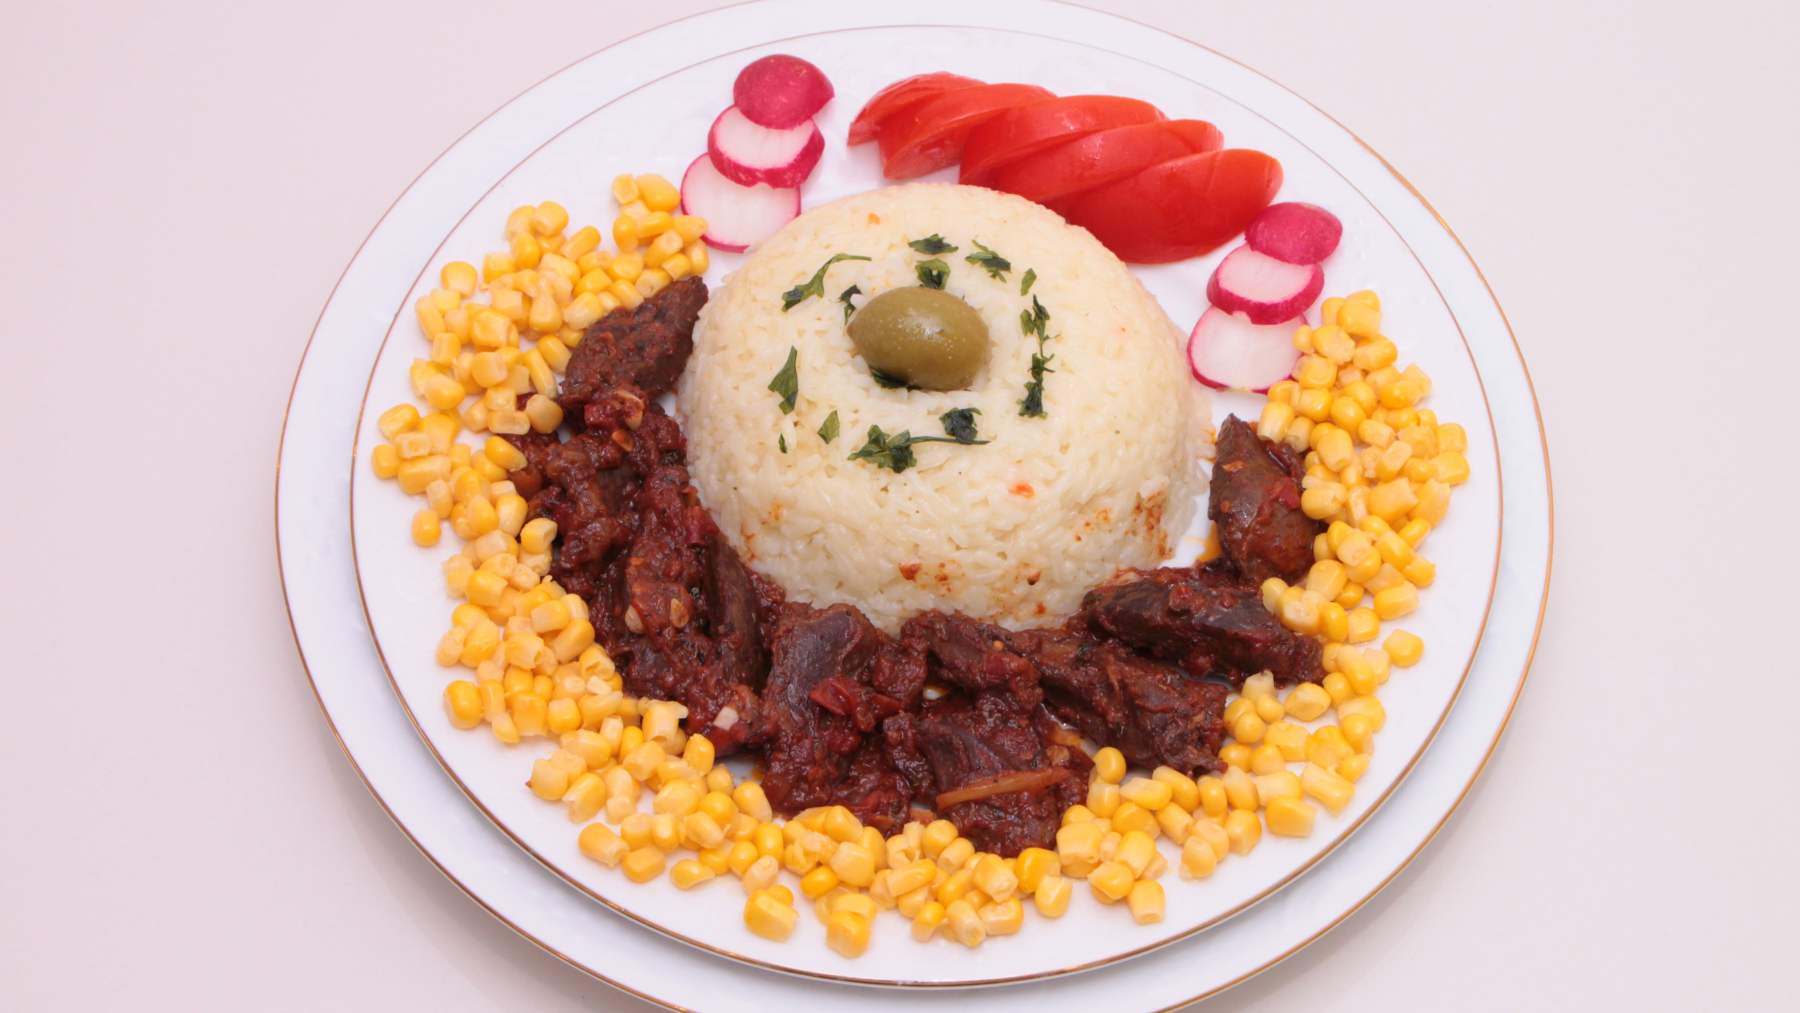 https://okdiario.com/img/2022/10/18/arroz-en-molde-con-picadillo-de-carne-y-setas-2.jpg